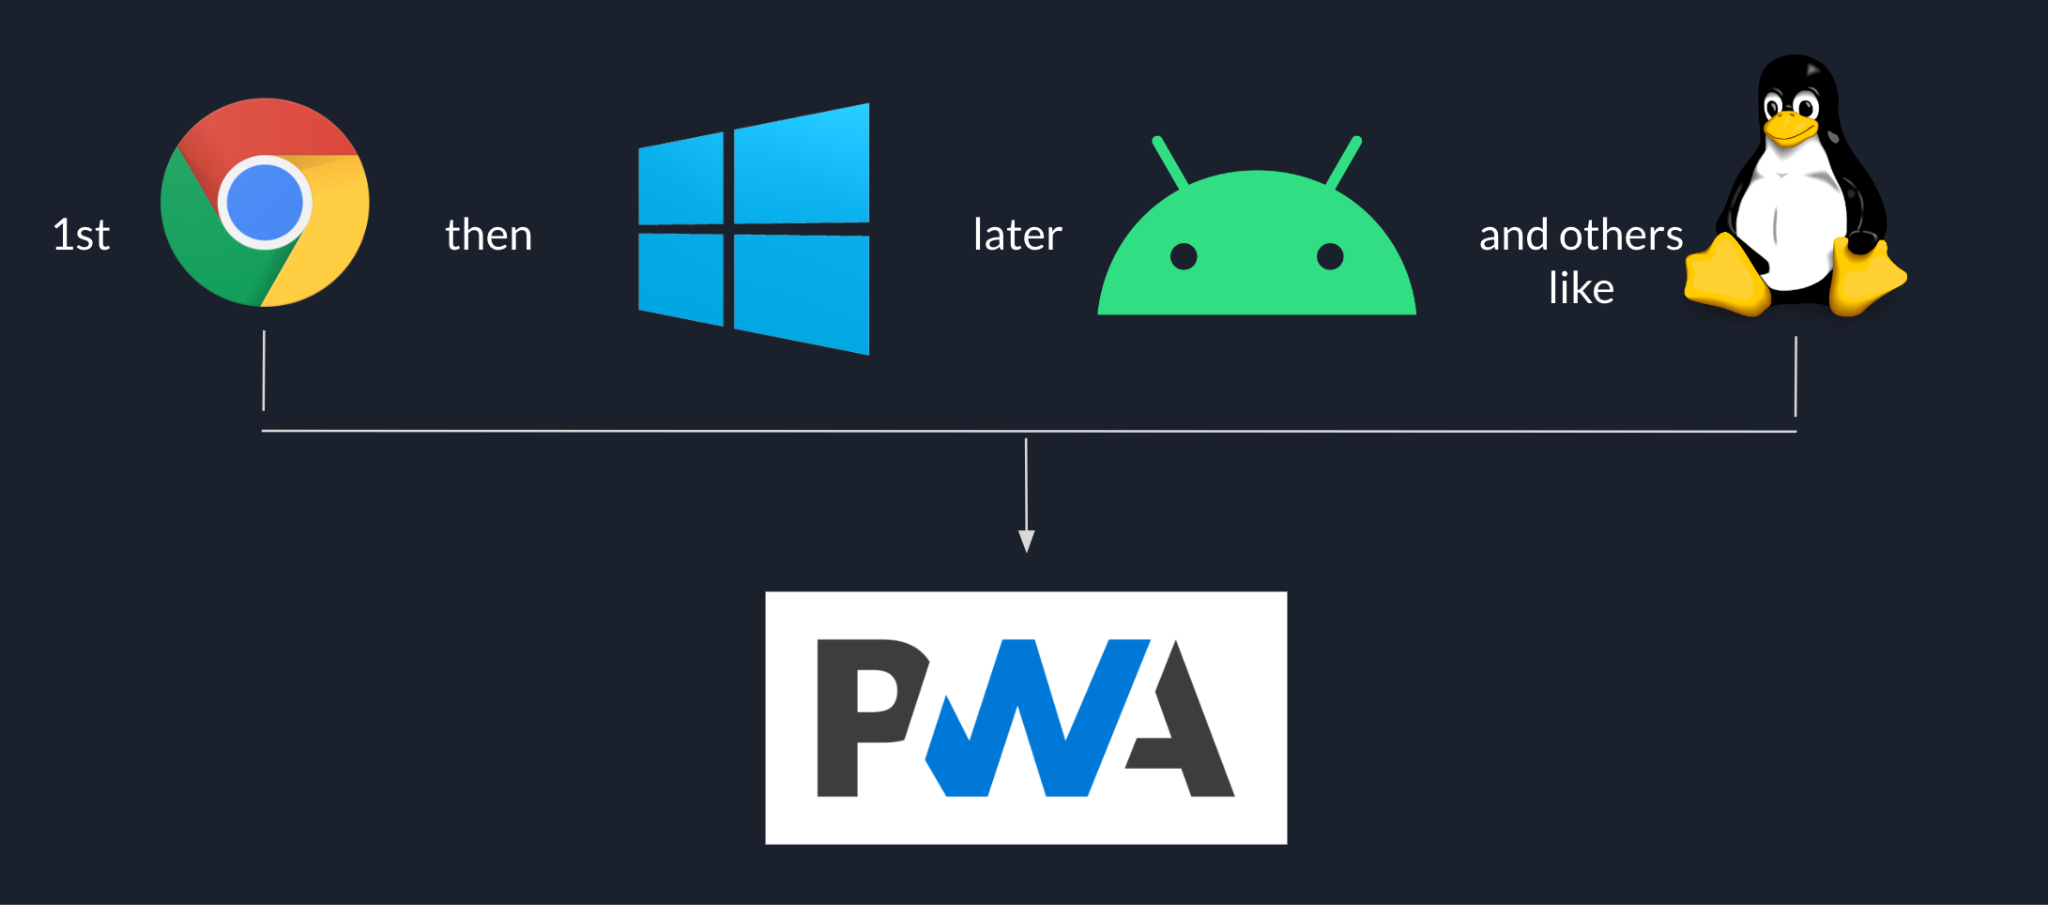 Goodnotes のロールアウト シーケンスは、Chrome から始まり、Windows、最後に Android と、Linux などの他のプラットフォームが PWA をベースにしています。